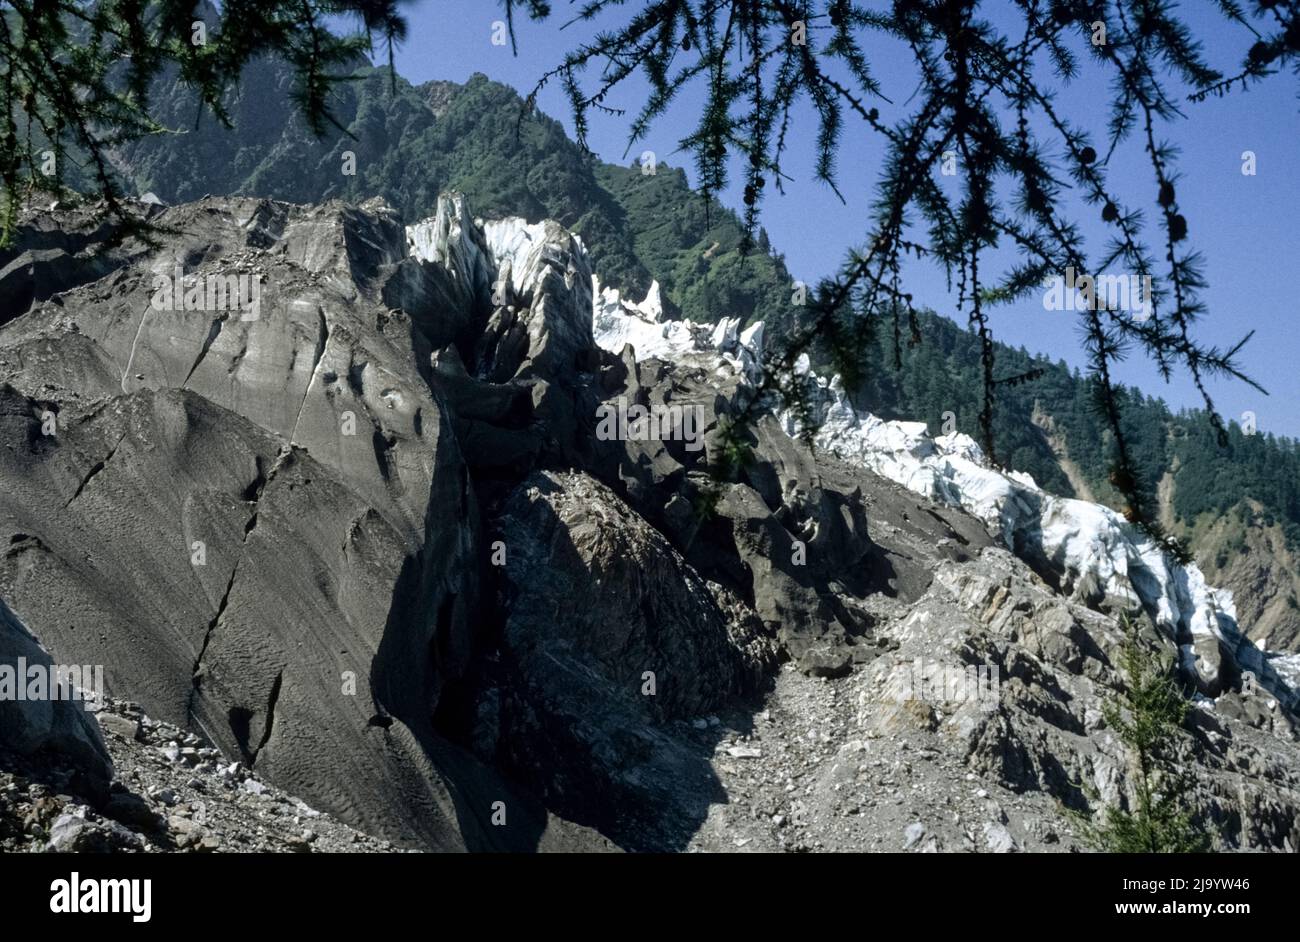 Au glacier des Bossons, vue depuis la moraine latérale de la fracture du glacier. Chamonix Mont blanc, France, 1990 Banque D'Images